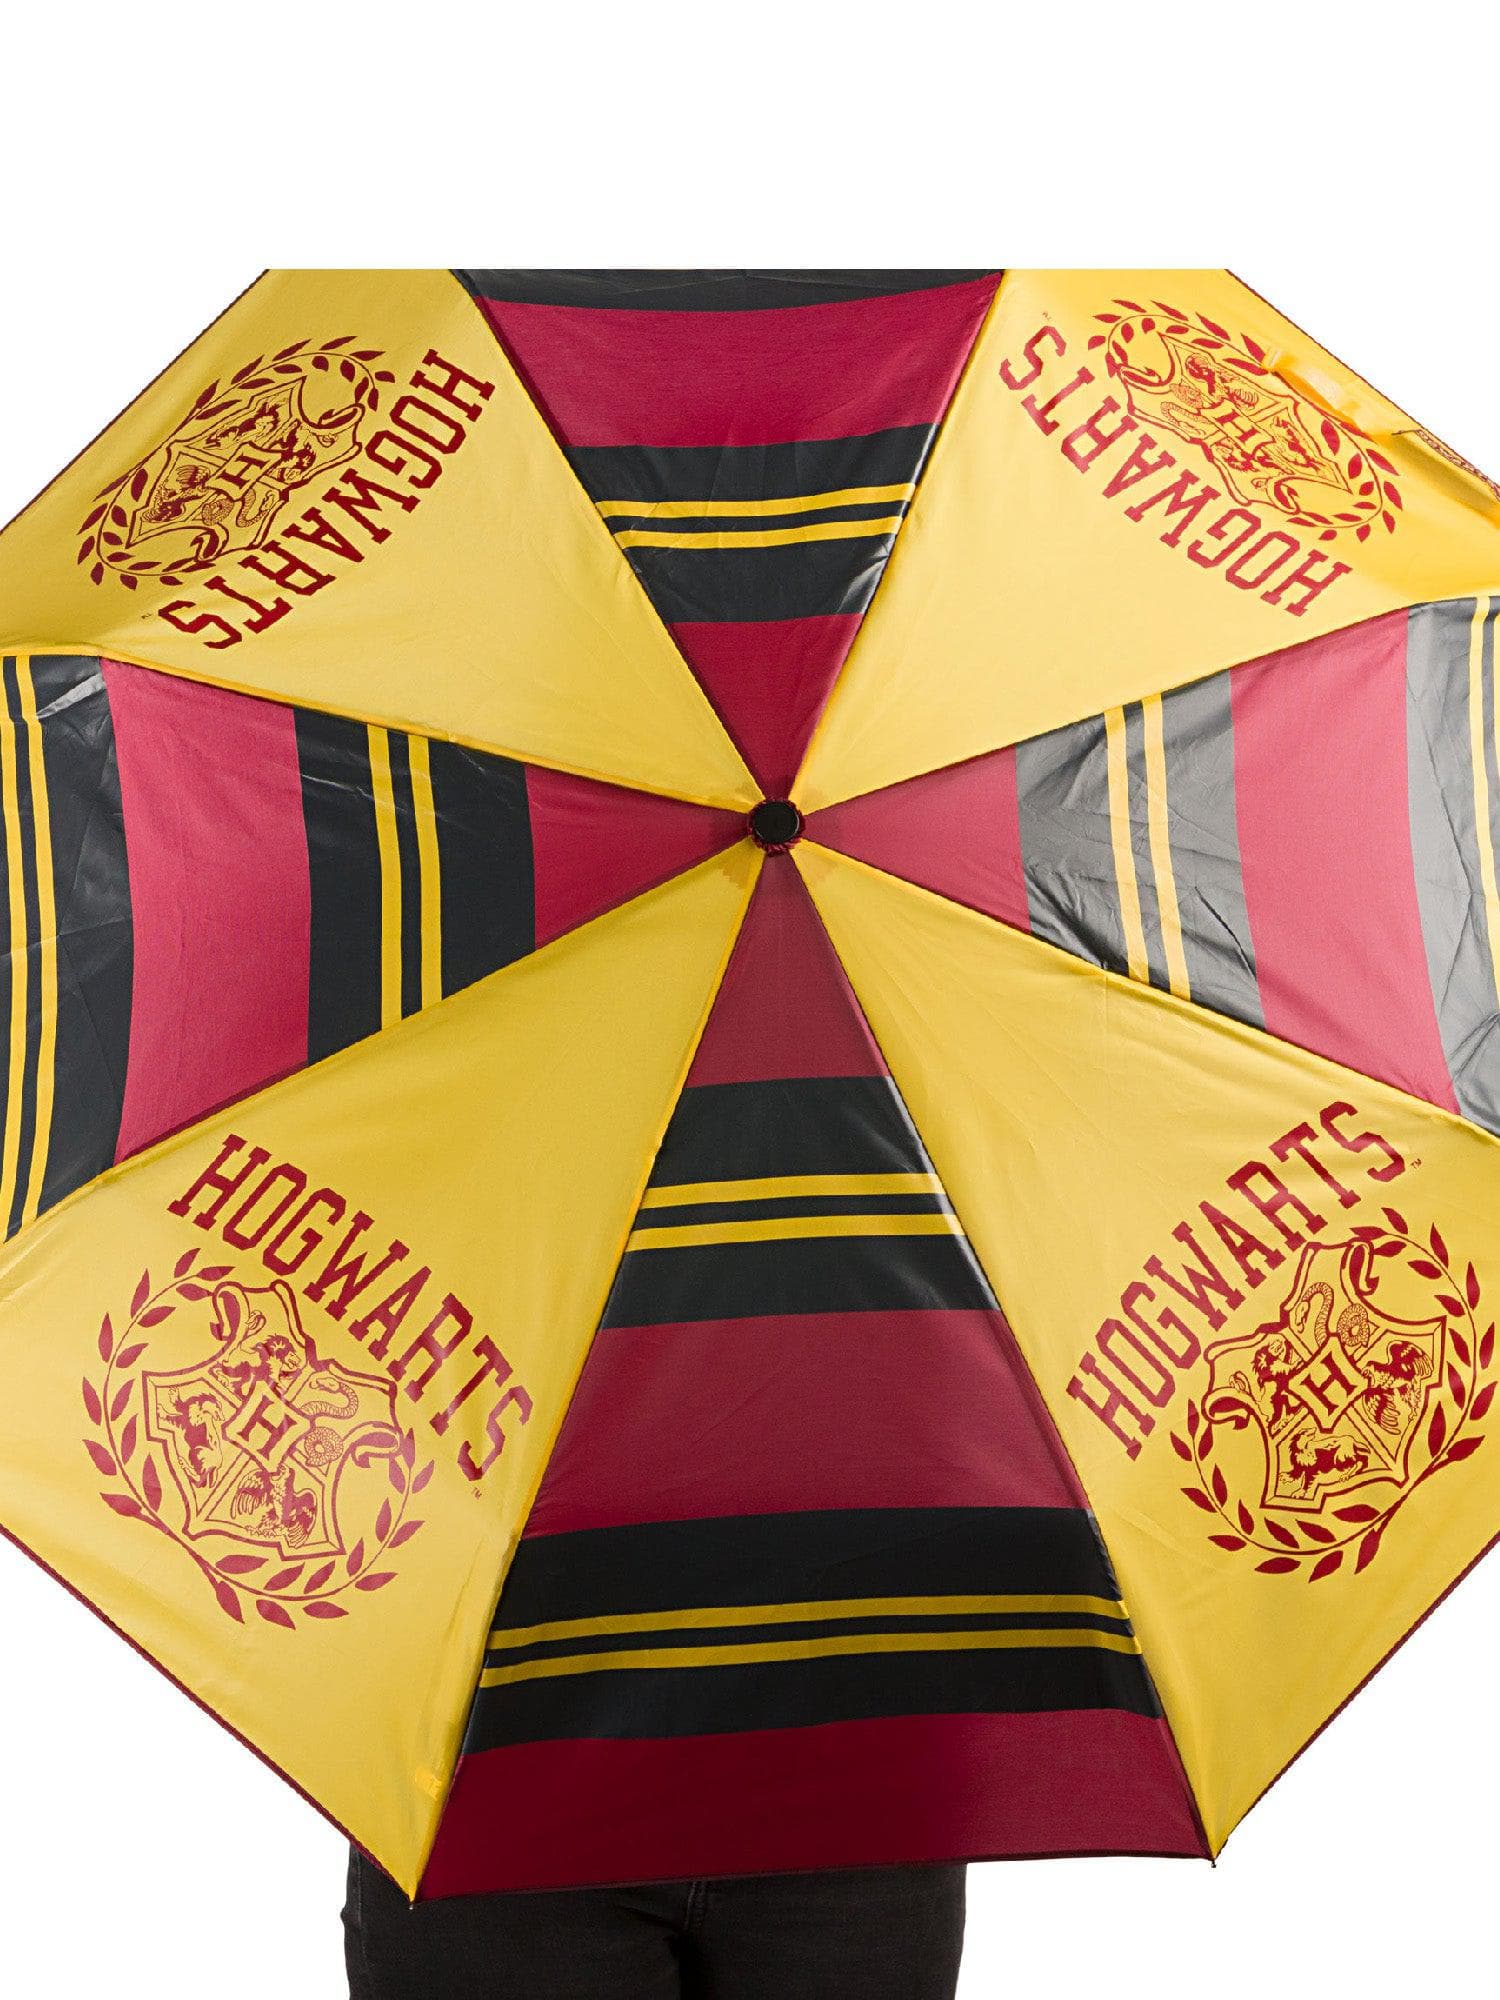 Harry Potter "Hogwarts Crest" Umbrella - costumes.com